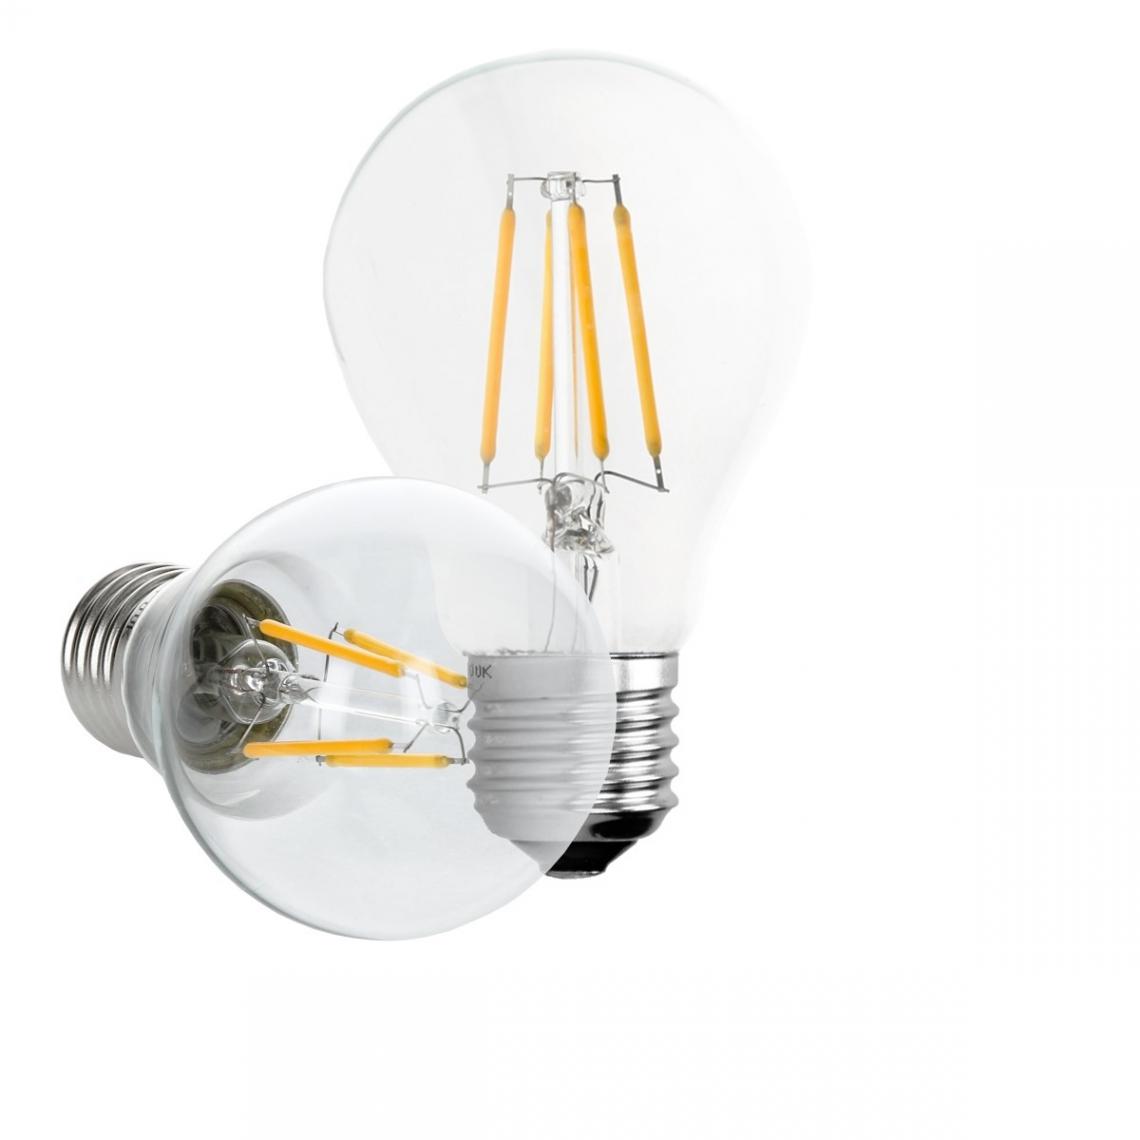 Ecd Germany - ECD Germany 4 x LED Filament de l'ampoule E27 classique Edison 4W 408 lumens 120° Angle de faisceau AC 220-240 reste caché et remplace 20W Lampe incandescente Blanc Chaud - Ampoules LED